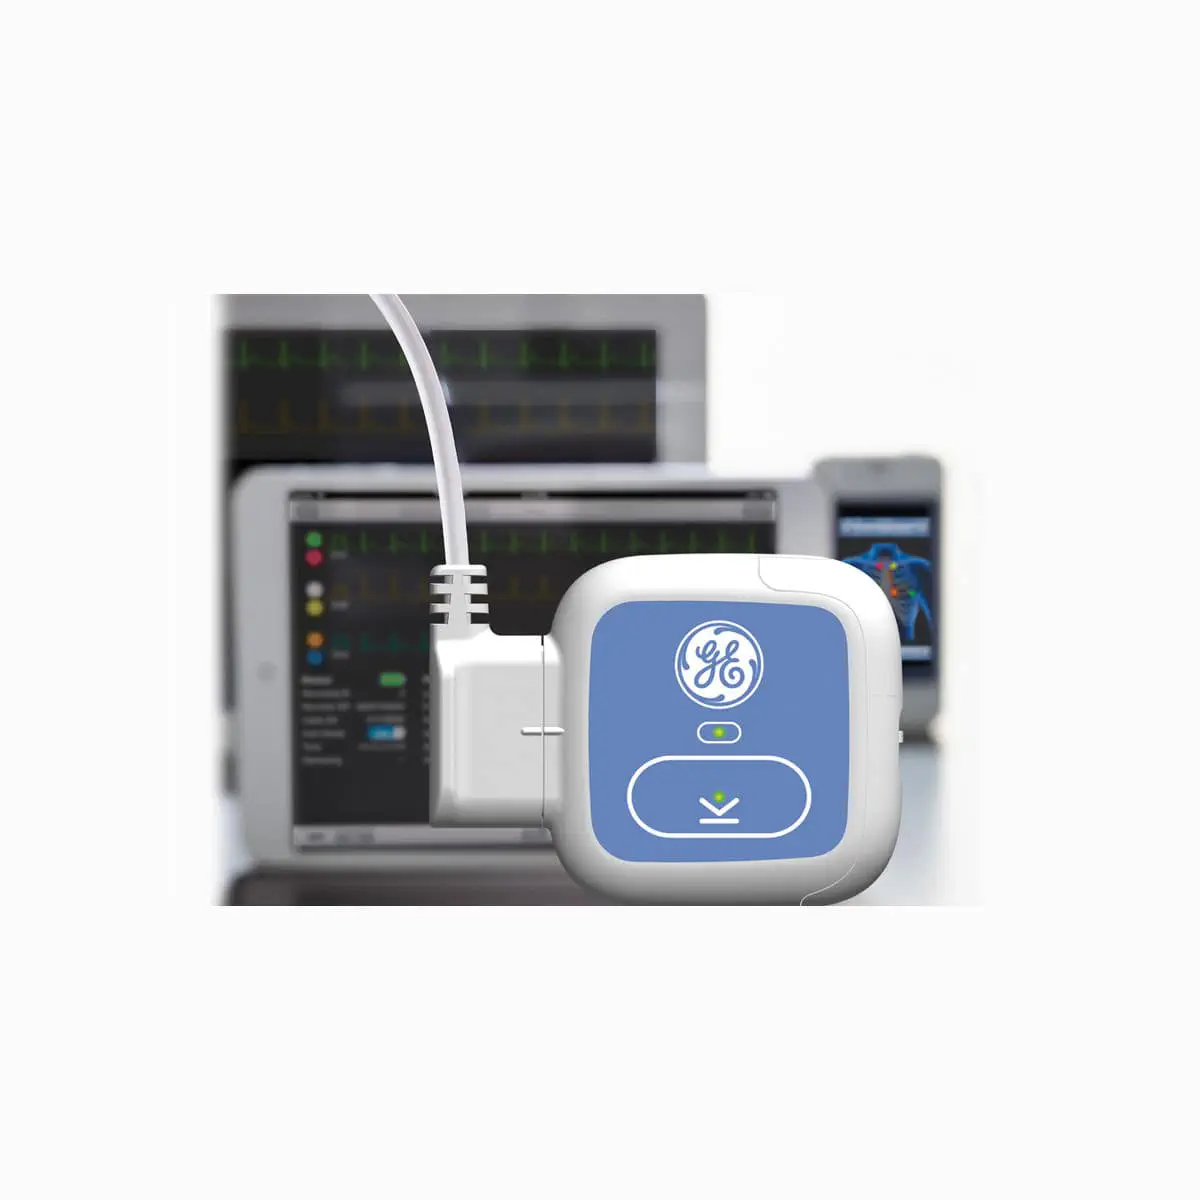 เครื่องตรวจติดตามการทำงานของหัวใจชนิดต่อเนื่องไม่น้อยกว่า 24 ชั่วโมง  2-channel Holter monitor SEER 1000  GE Healthcare